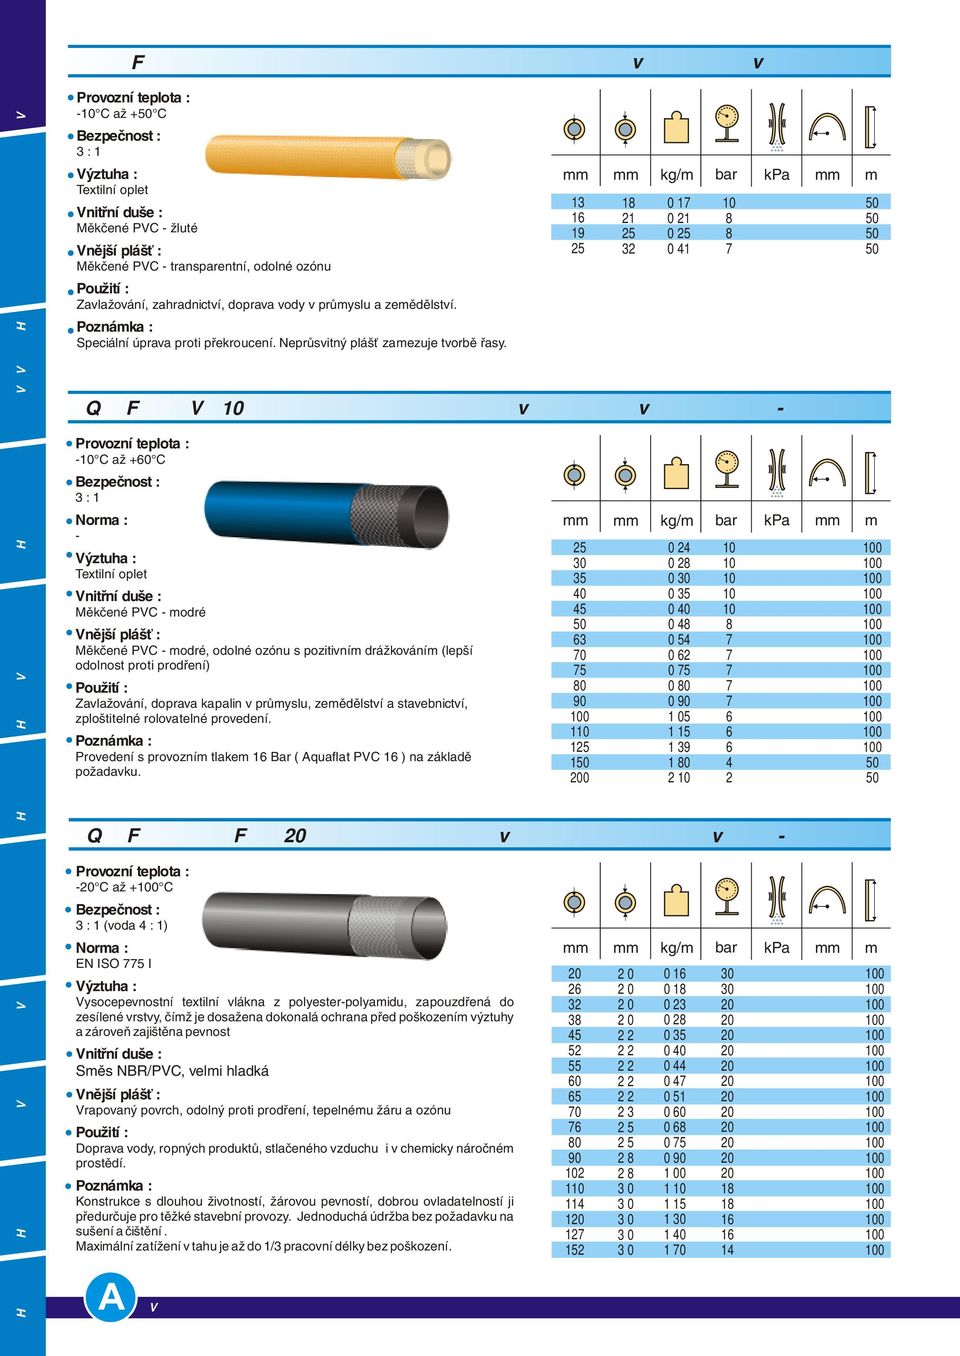 AQUAFLAT PVC C až + C : 1 Měkčené PVC modré Měkčené PVC modré, odolné ozónu s pozitivním drážkováním (lepší odolnost proti prodření) Zavlažování, doprava kapalin v průmyslu, zemědělství a